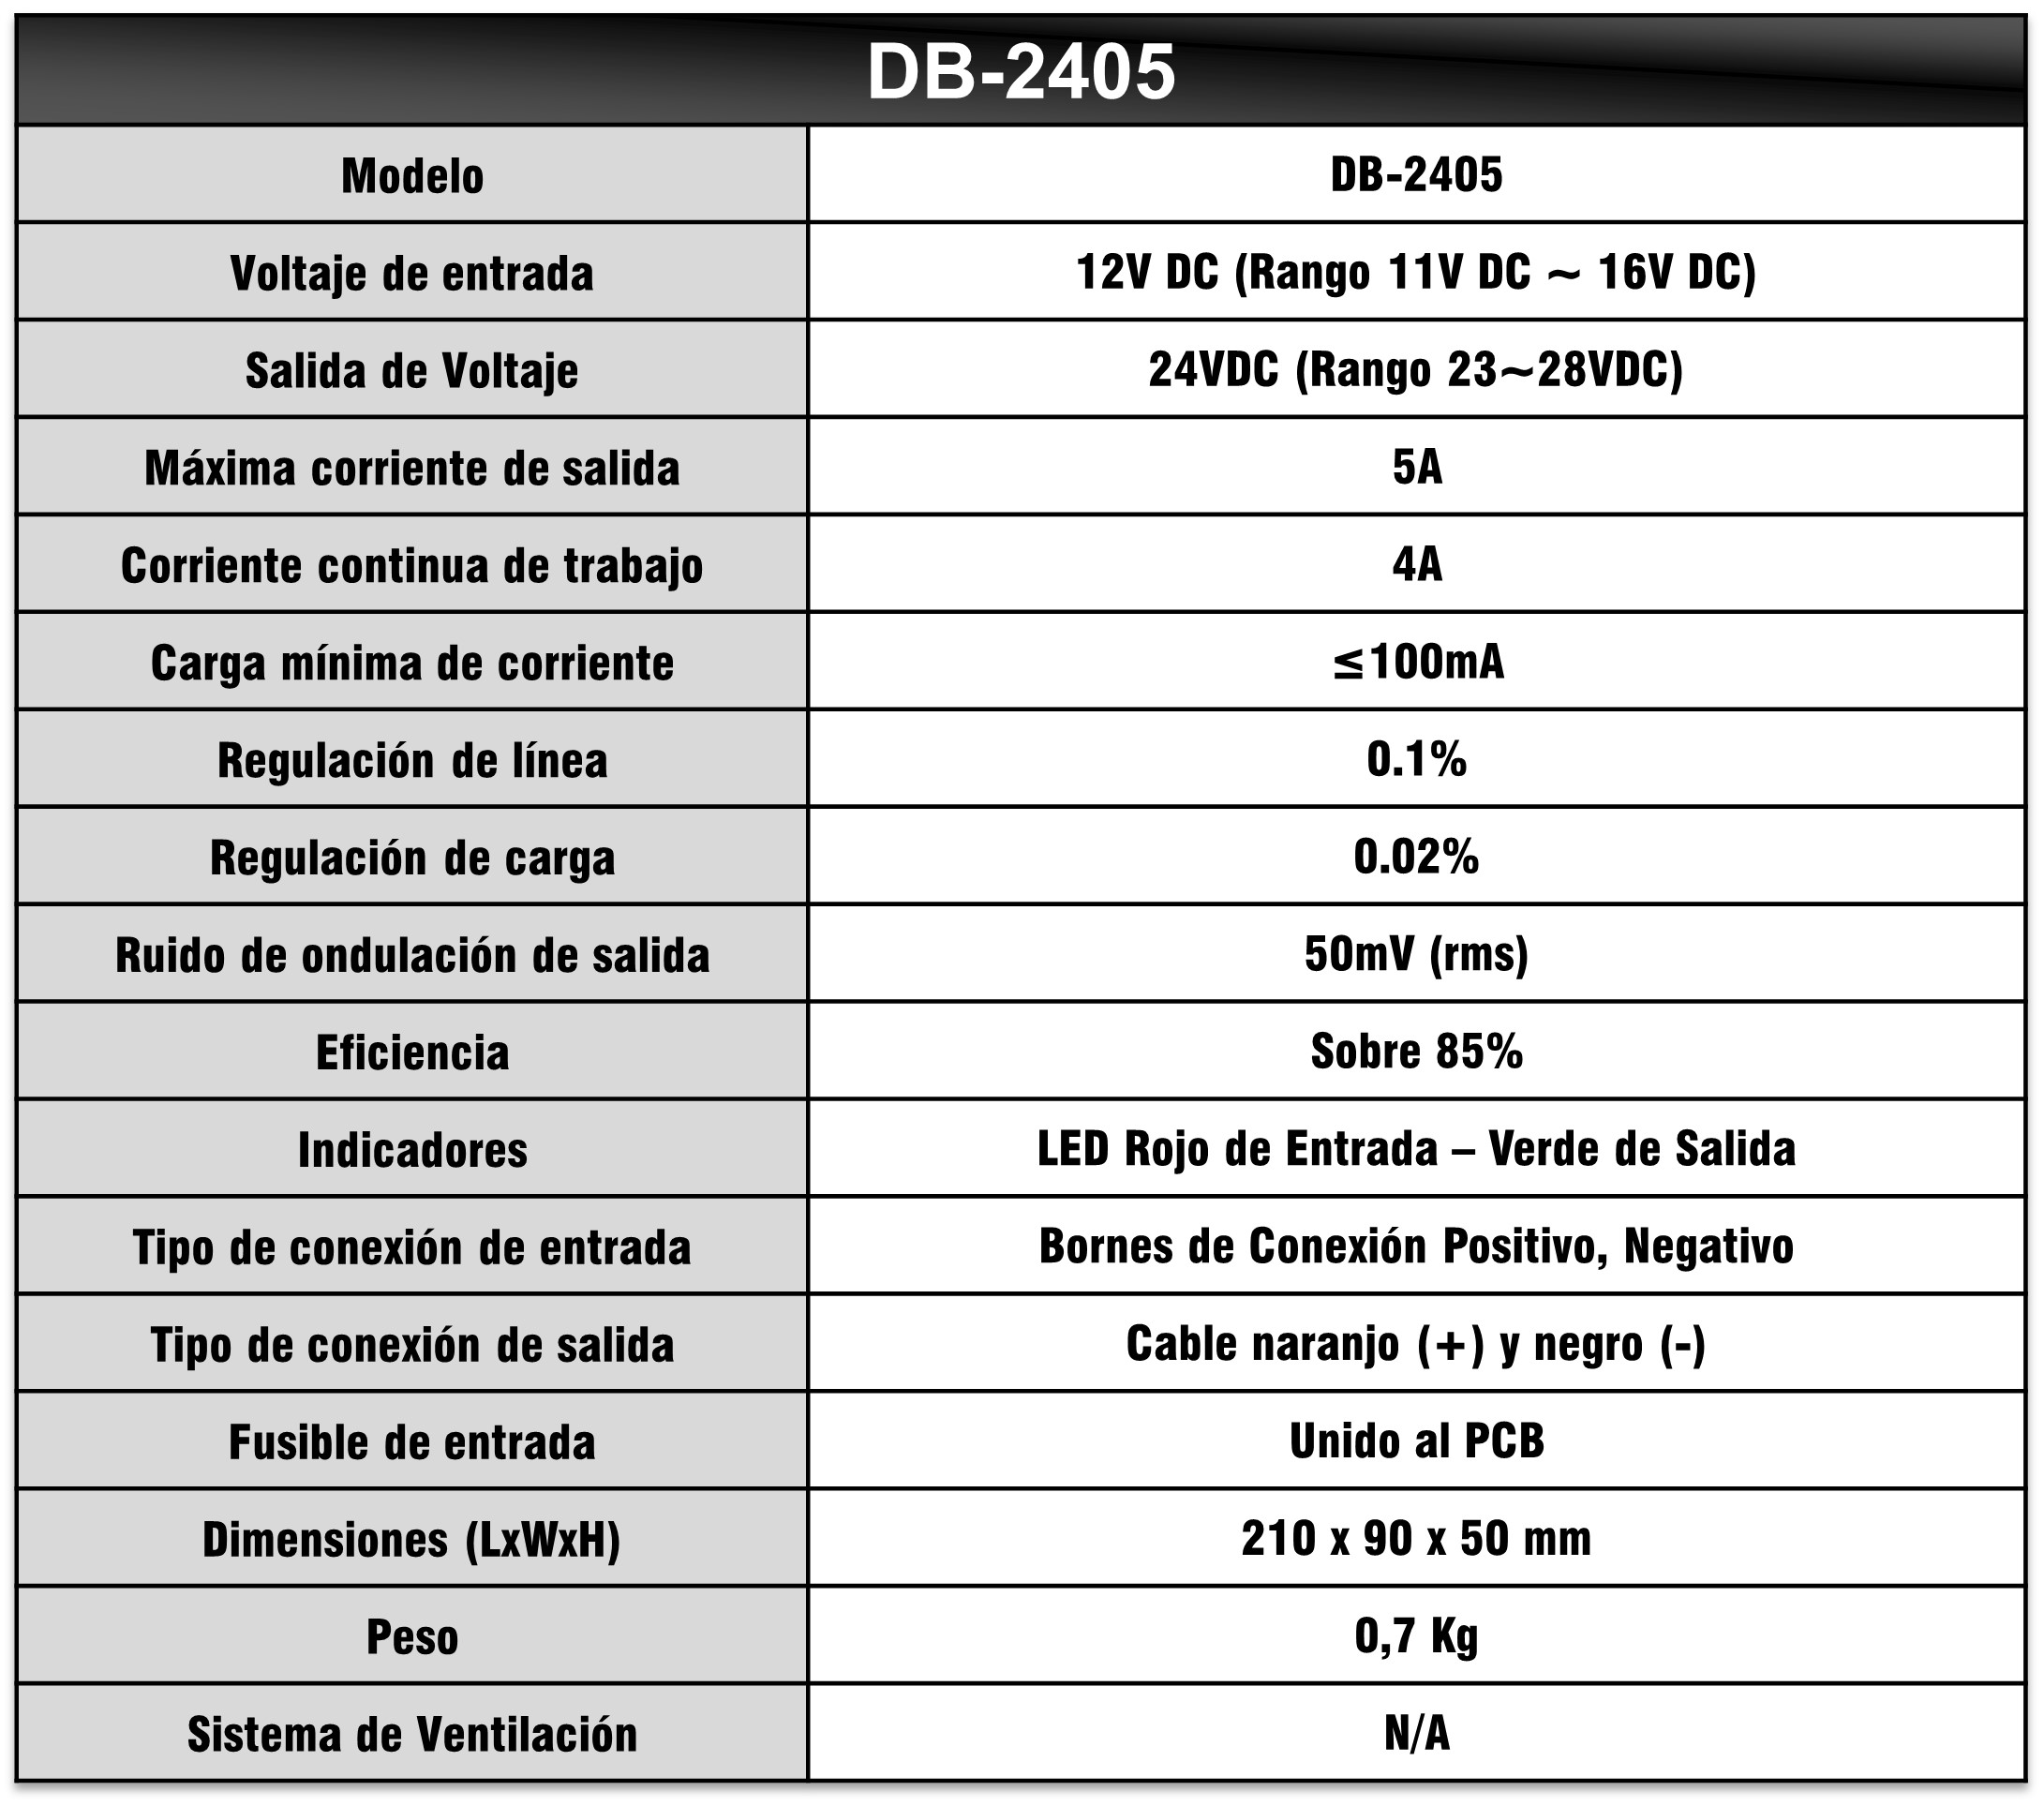 Especificaciones conversor DB-2405